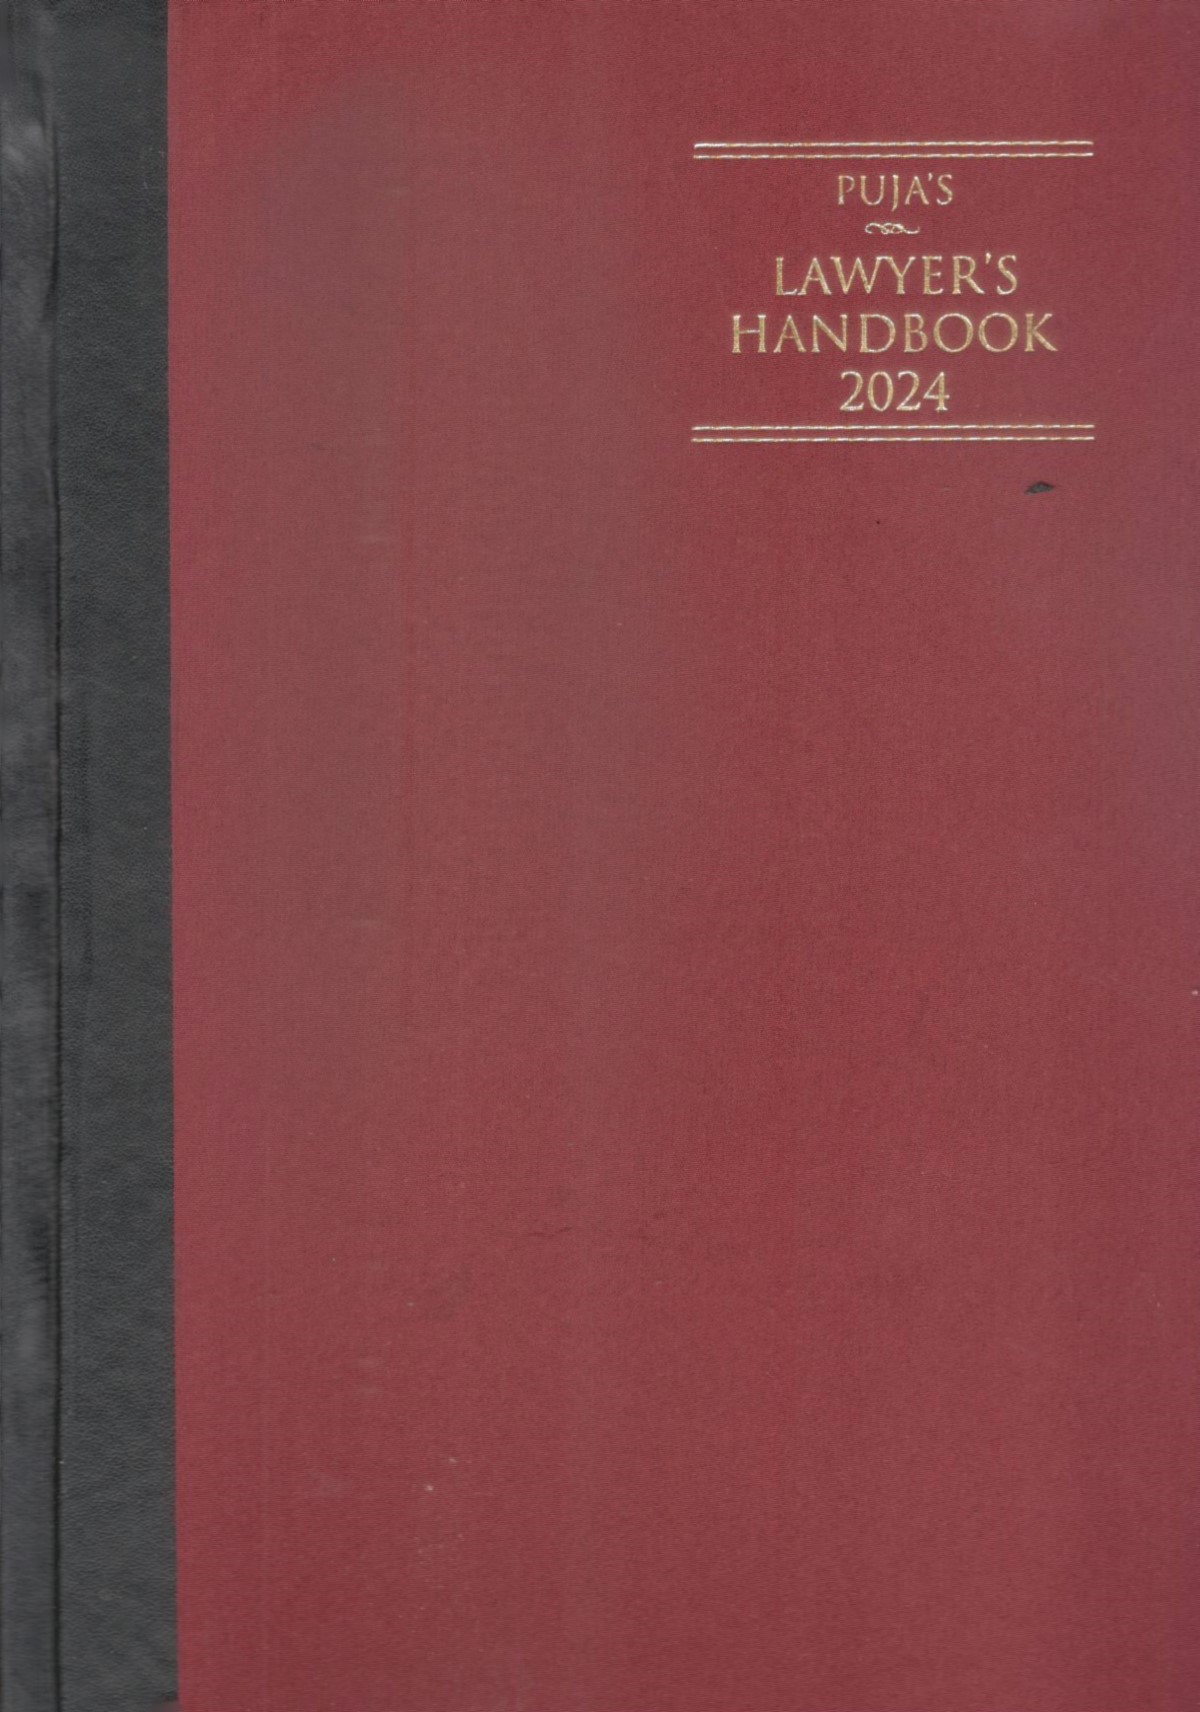  Buy Puja’s Lawyer’s Handbook 2024 - Register Maroon